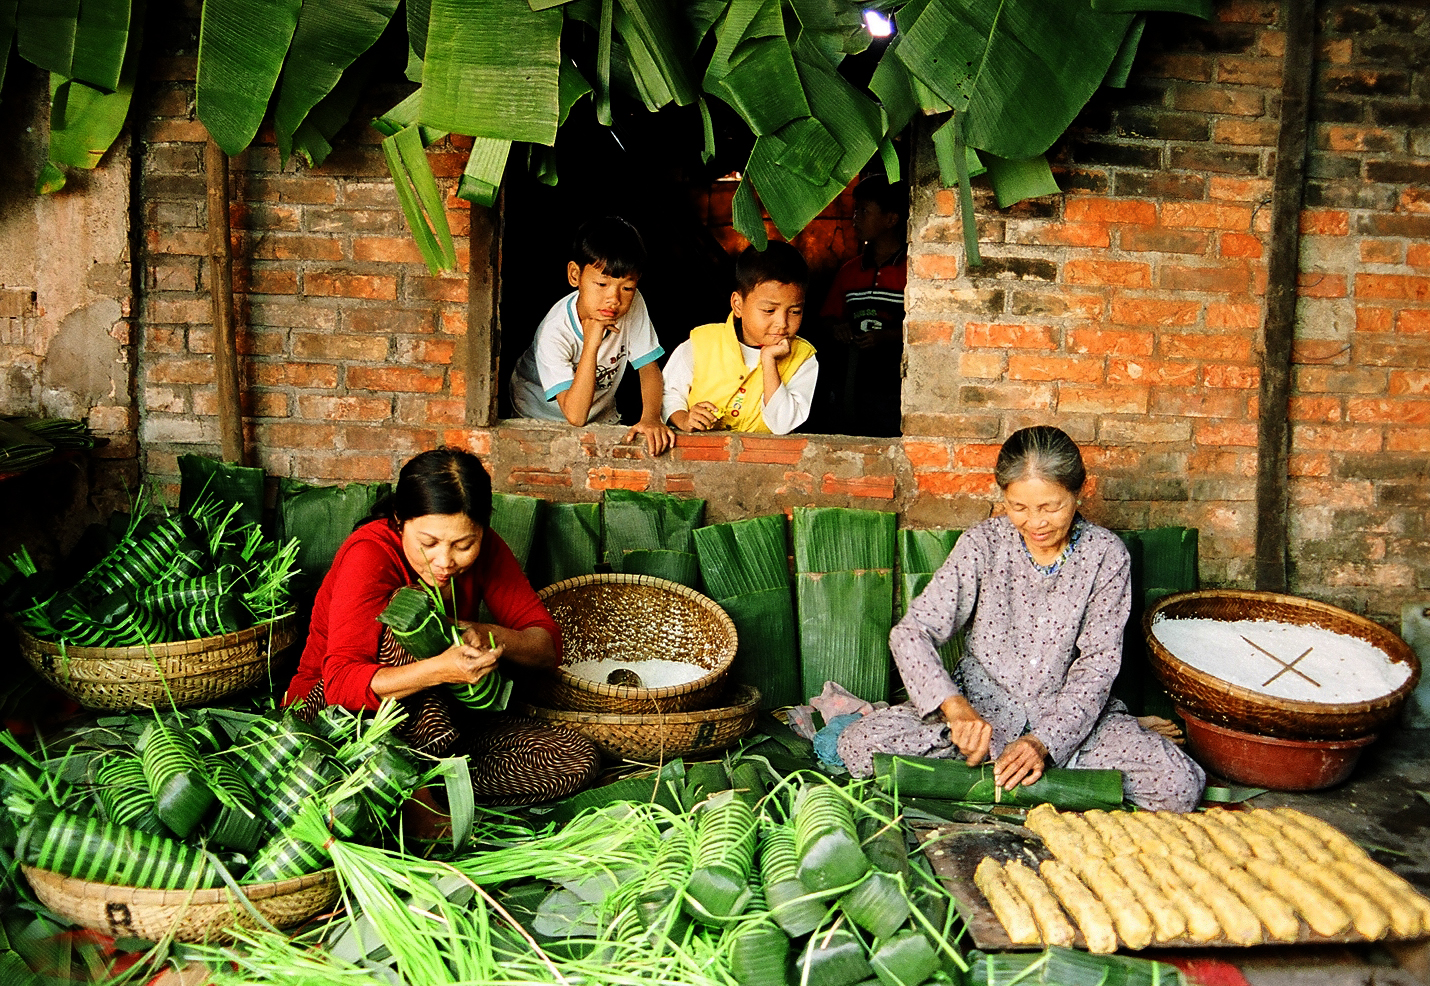 Hãy cùng trở về quá khứ và khám phá Tết quê xưa của người Việt. Những hình ảnh này sẽ đưa bạn đến với một thế giới đậm chất truyền thống và văn hóa, khi cả làng xóm đoàn viên bên nhau vui chơi, mừng Tết.